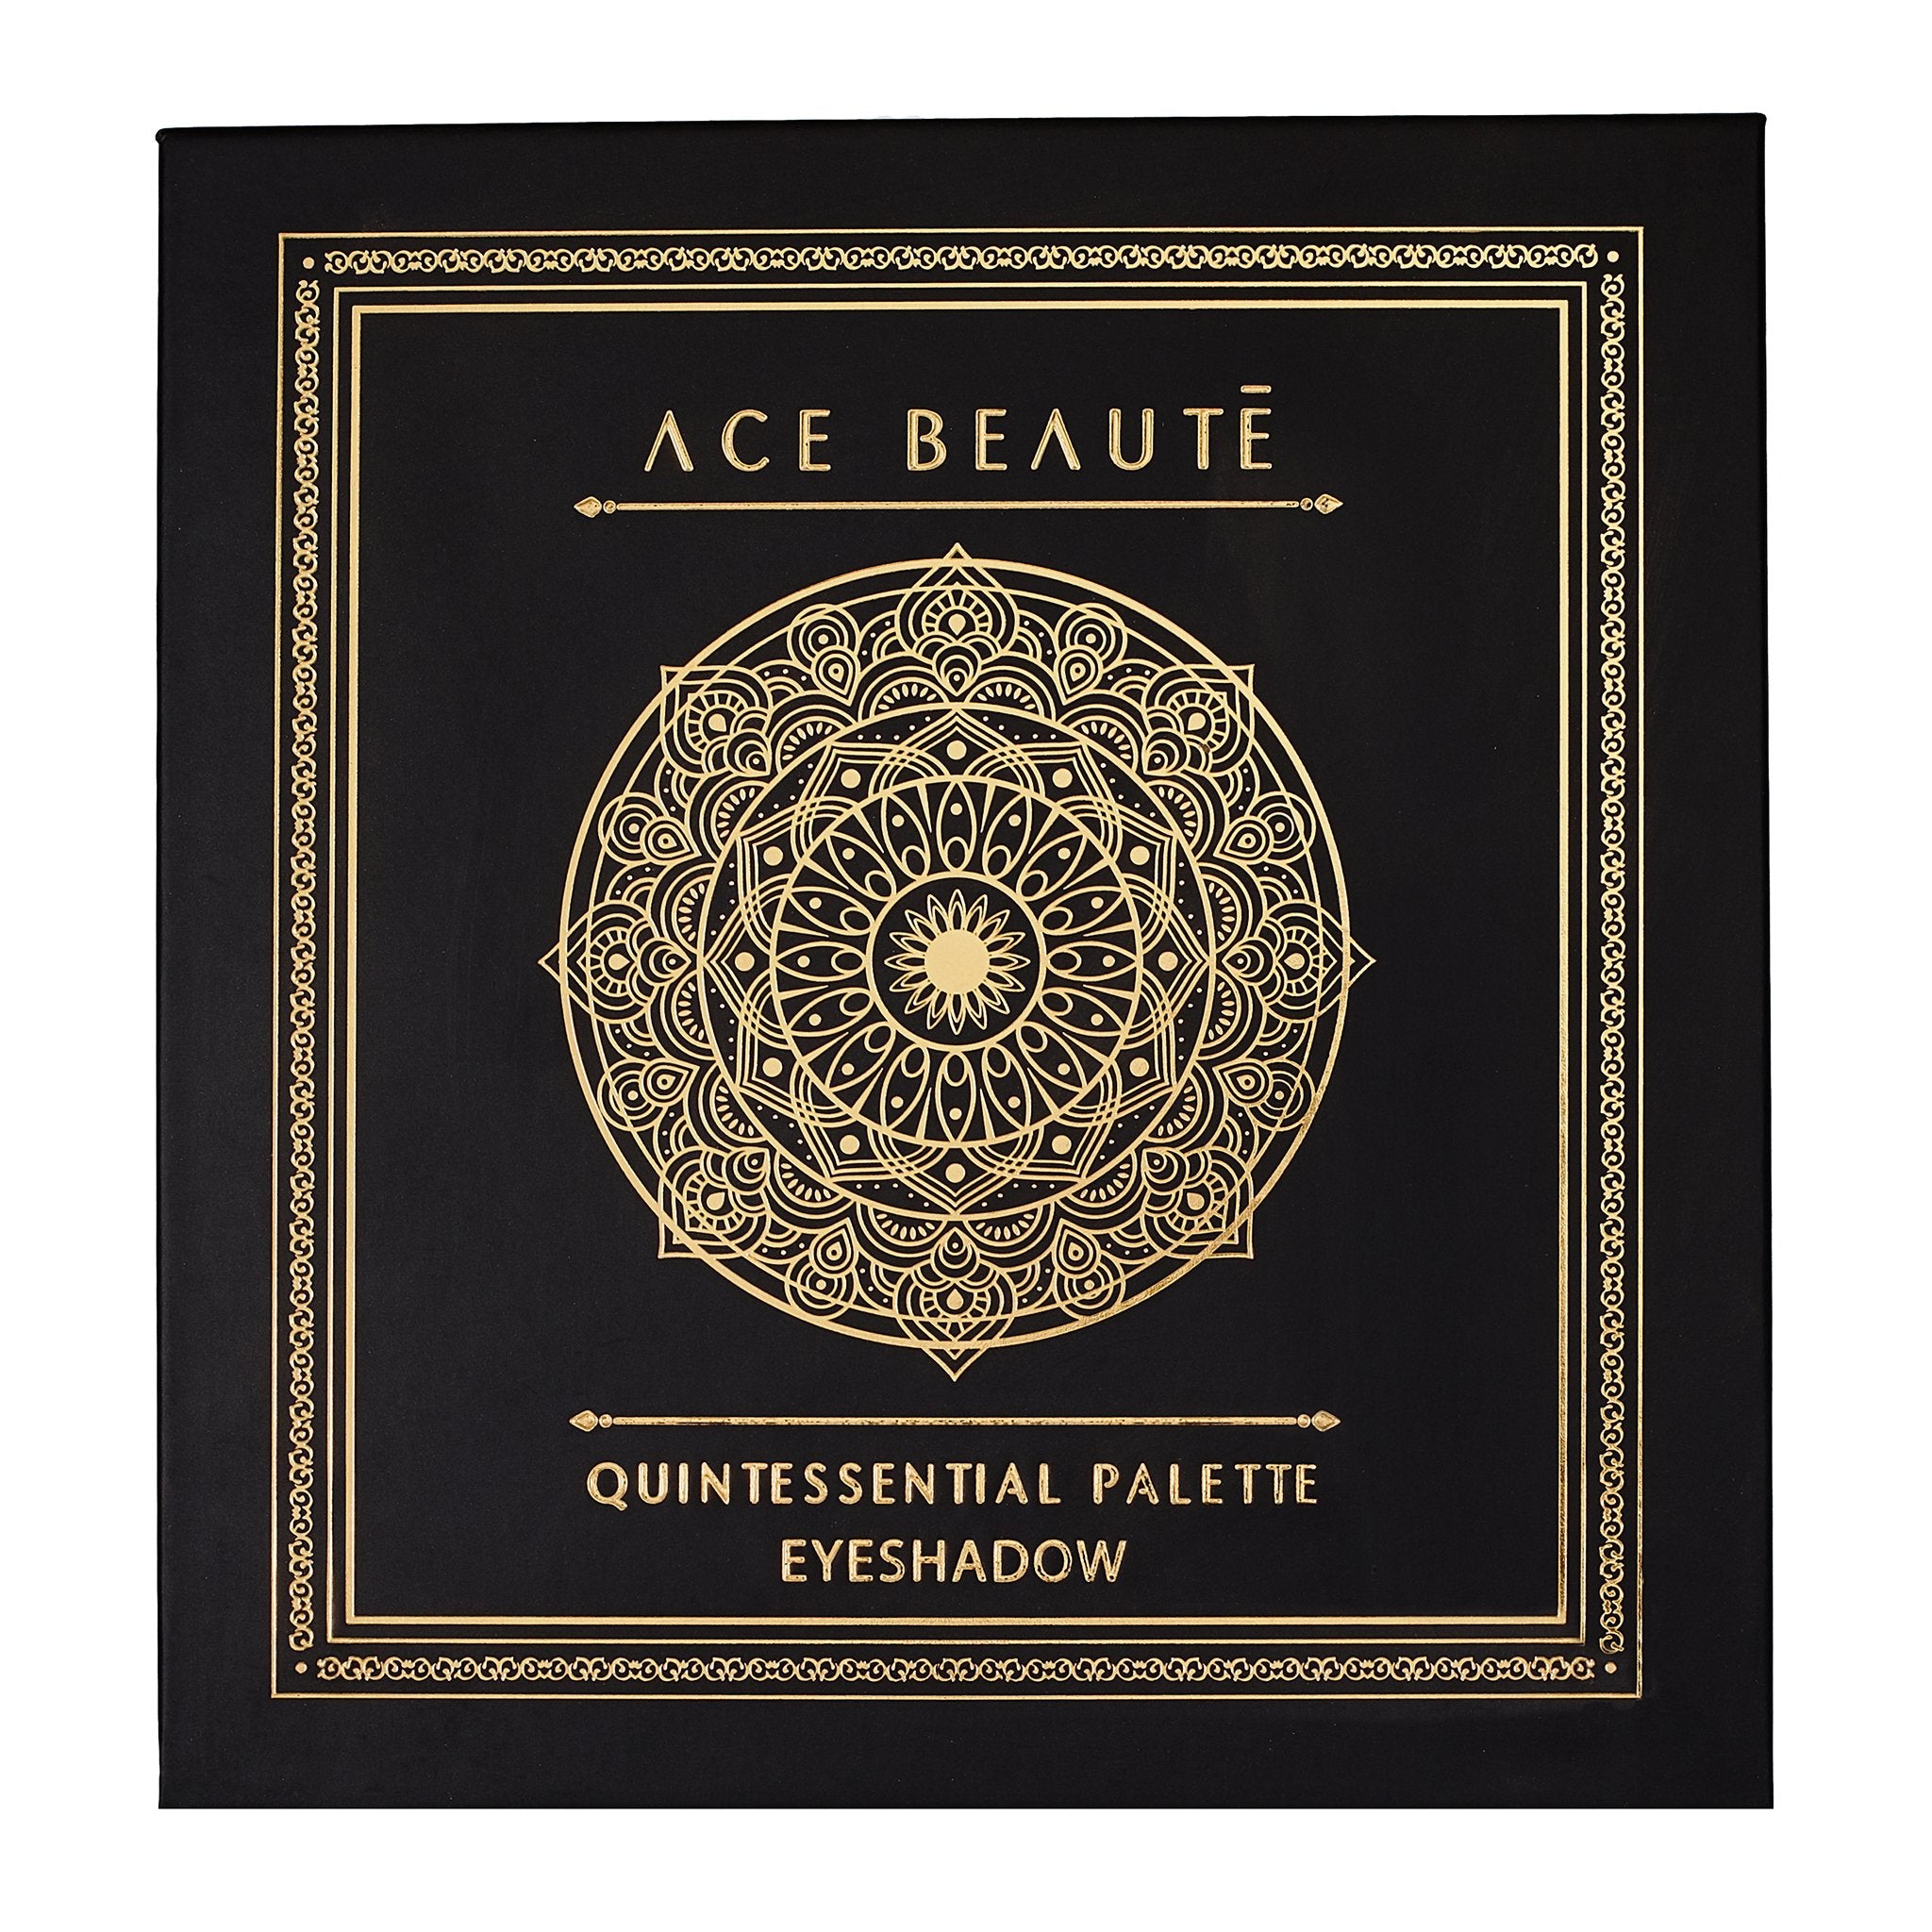 Ace Beaute - Quintessential Palette